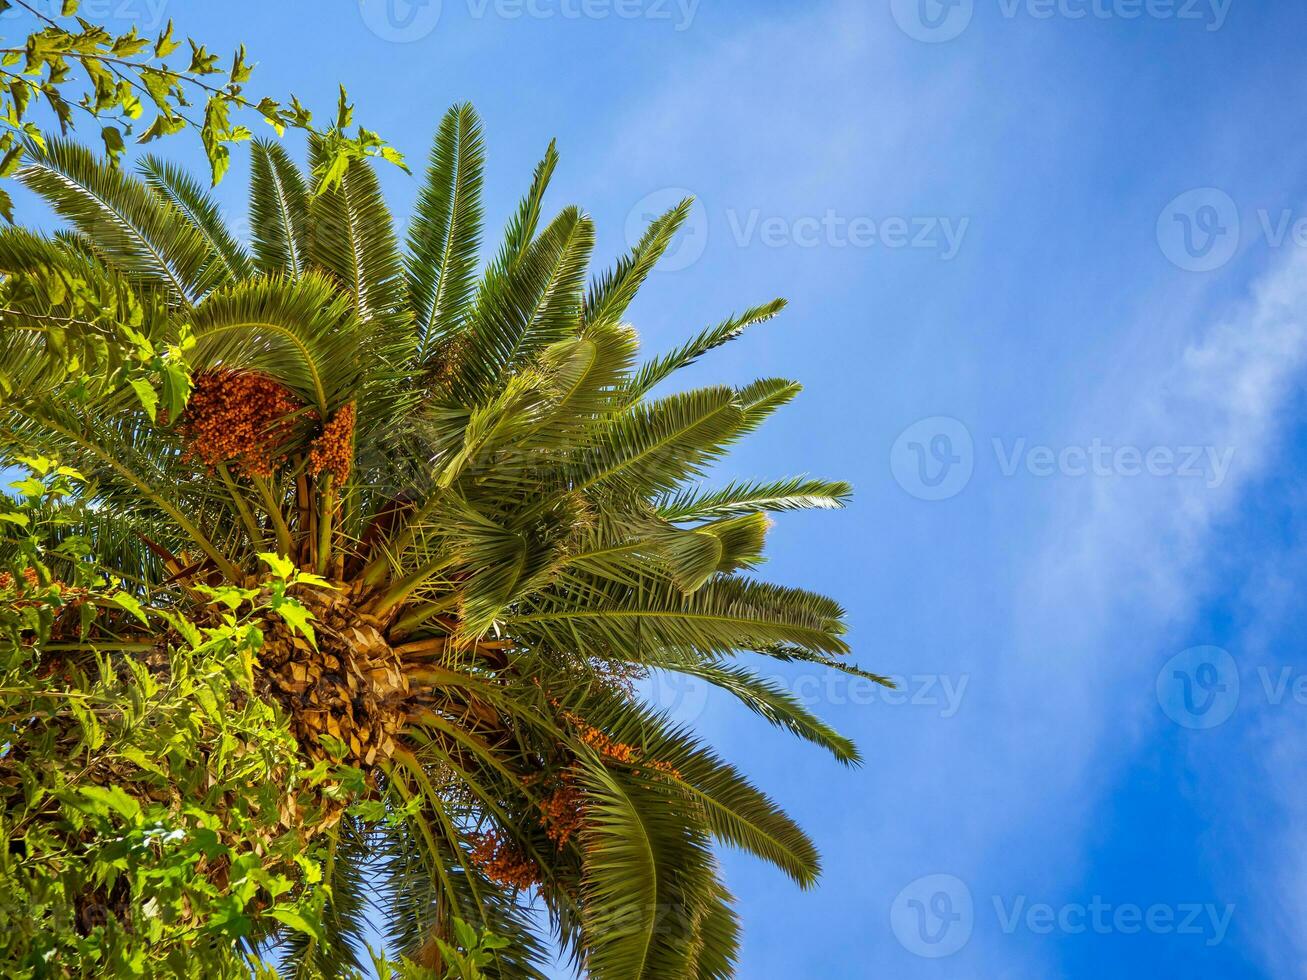 groß Palme Baum Überdachung mit teilweise wolkig Himmel Hintergrund foto